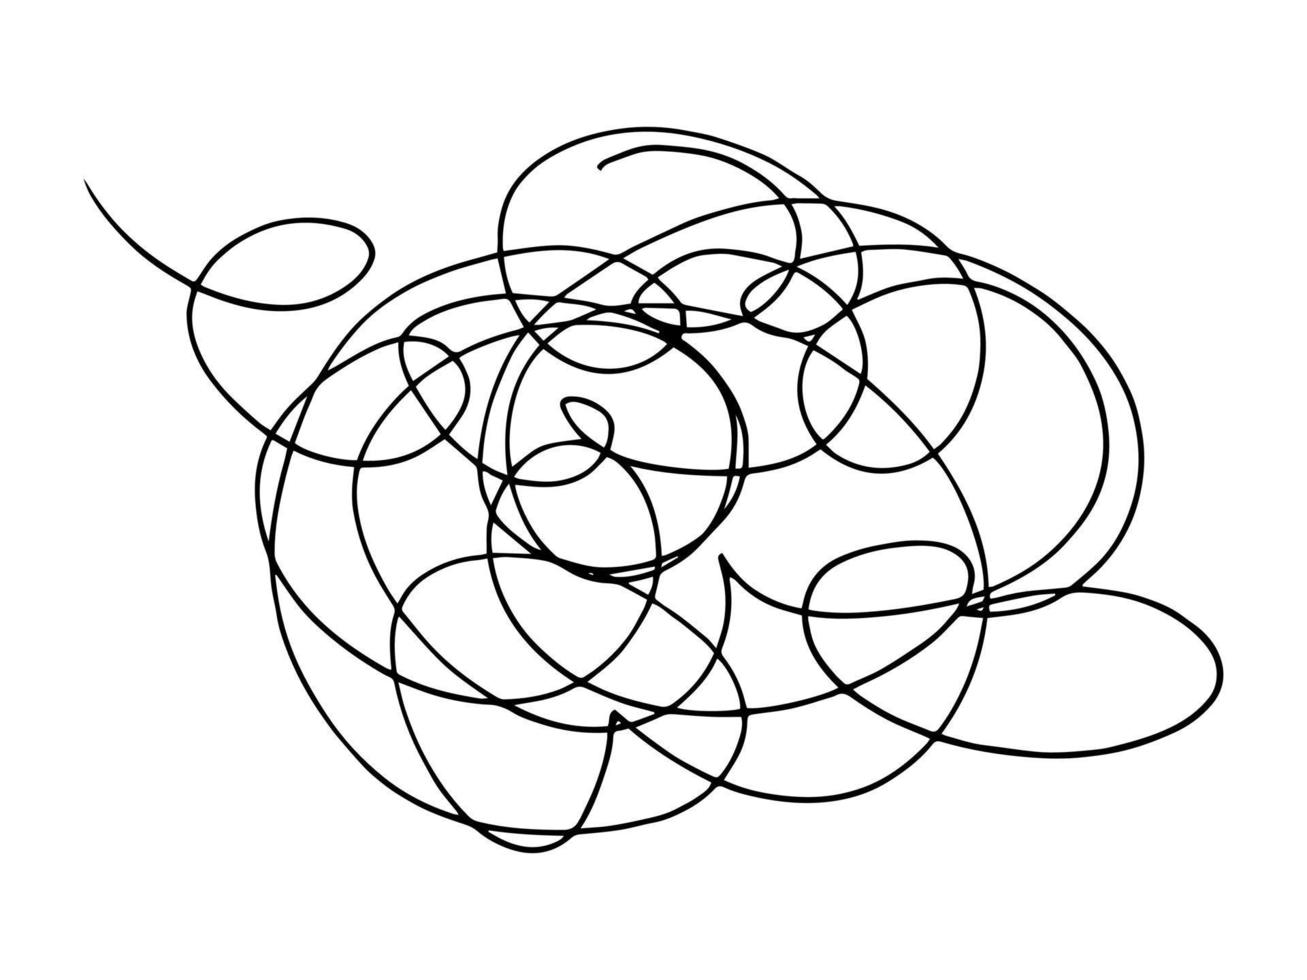 gribouillis emmêlés abstraits dessinés à la main. vecteur de lignes chaotiques aléatoires.